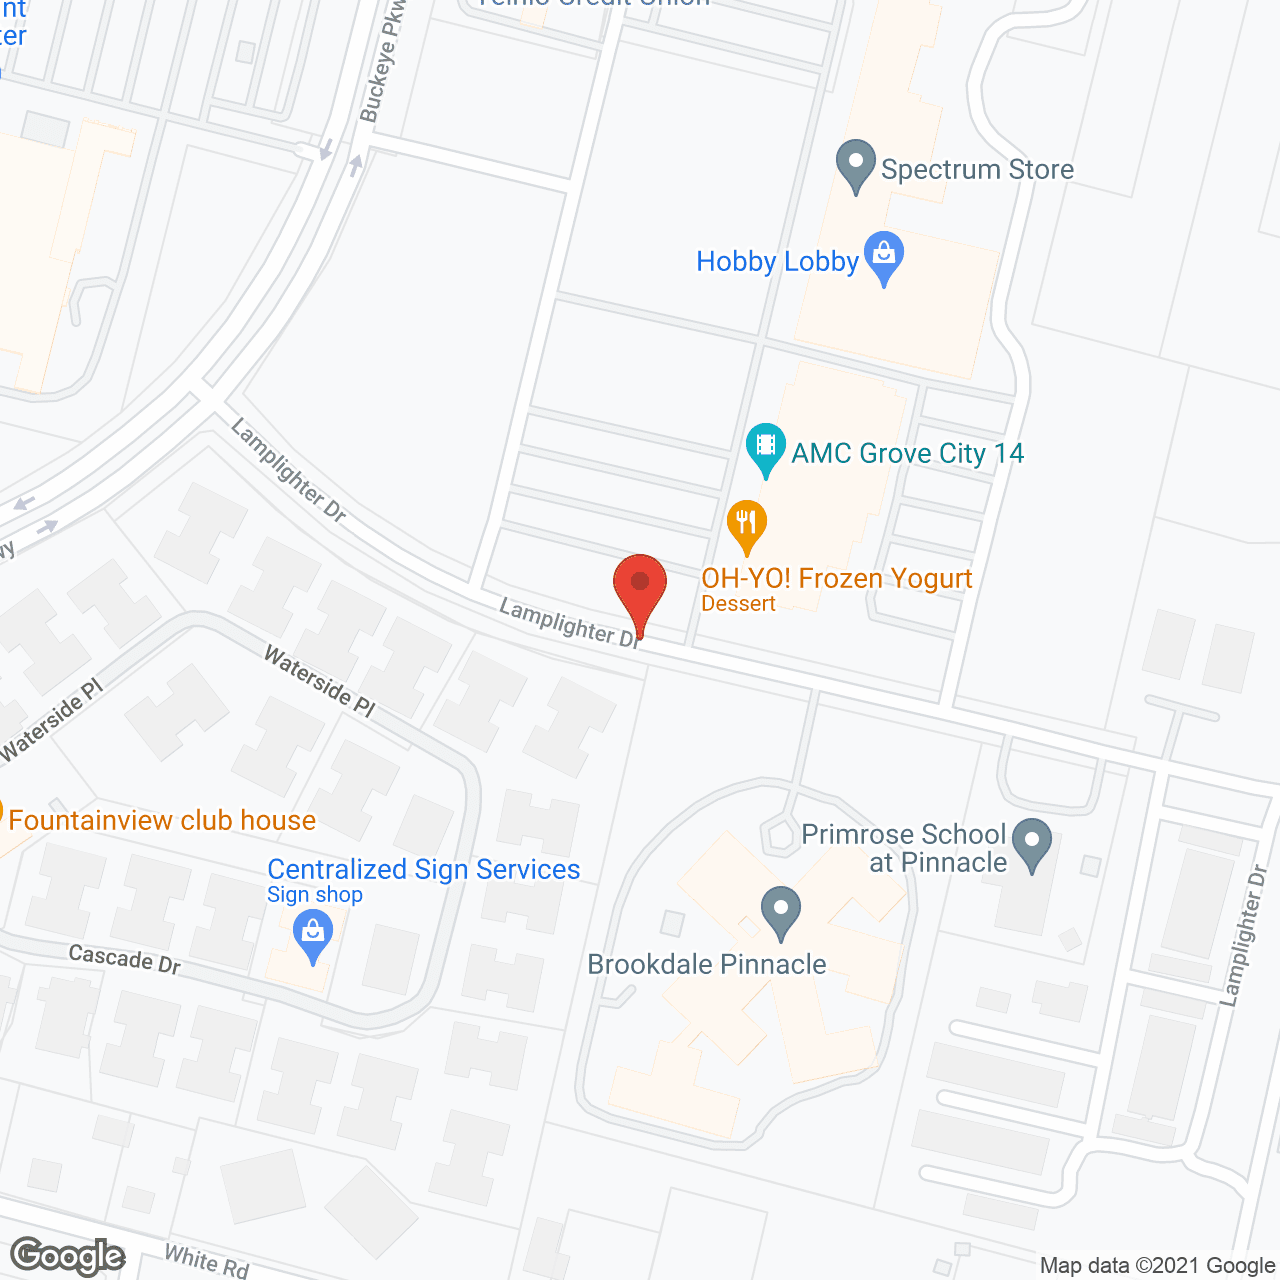 Brookdale Pinnacle (Offering HealthPlus) in google map